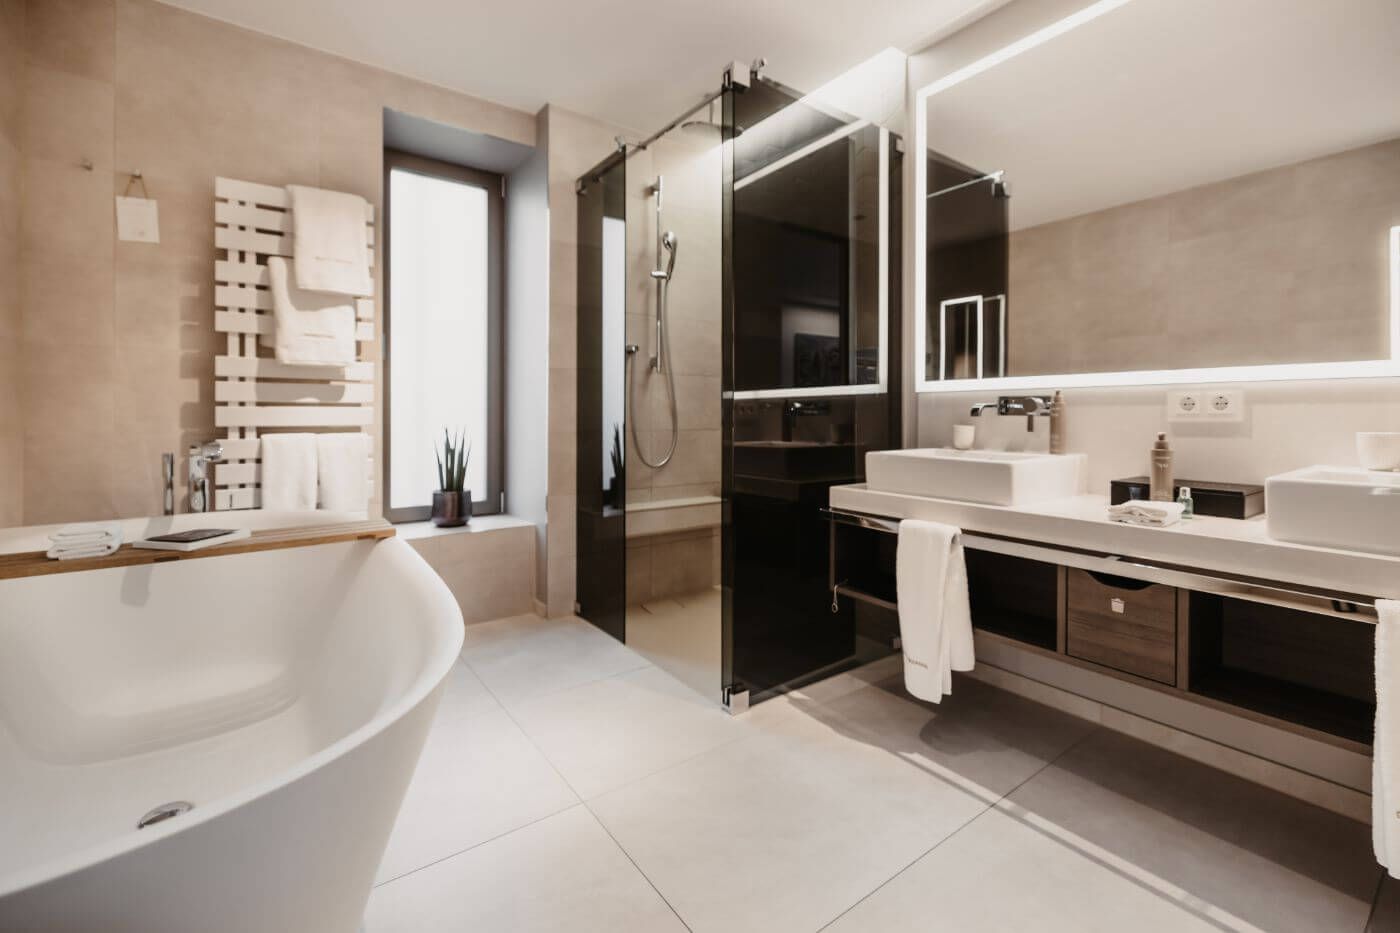 Modernes helles Badezimmer mit Badewanne, Dusche und großem beleuchteten Spiegel